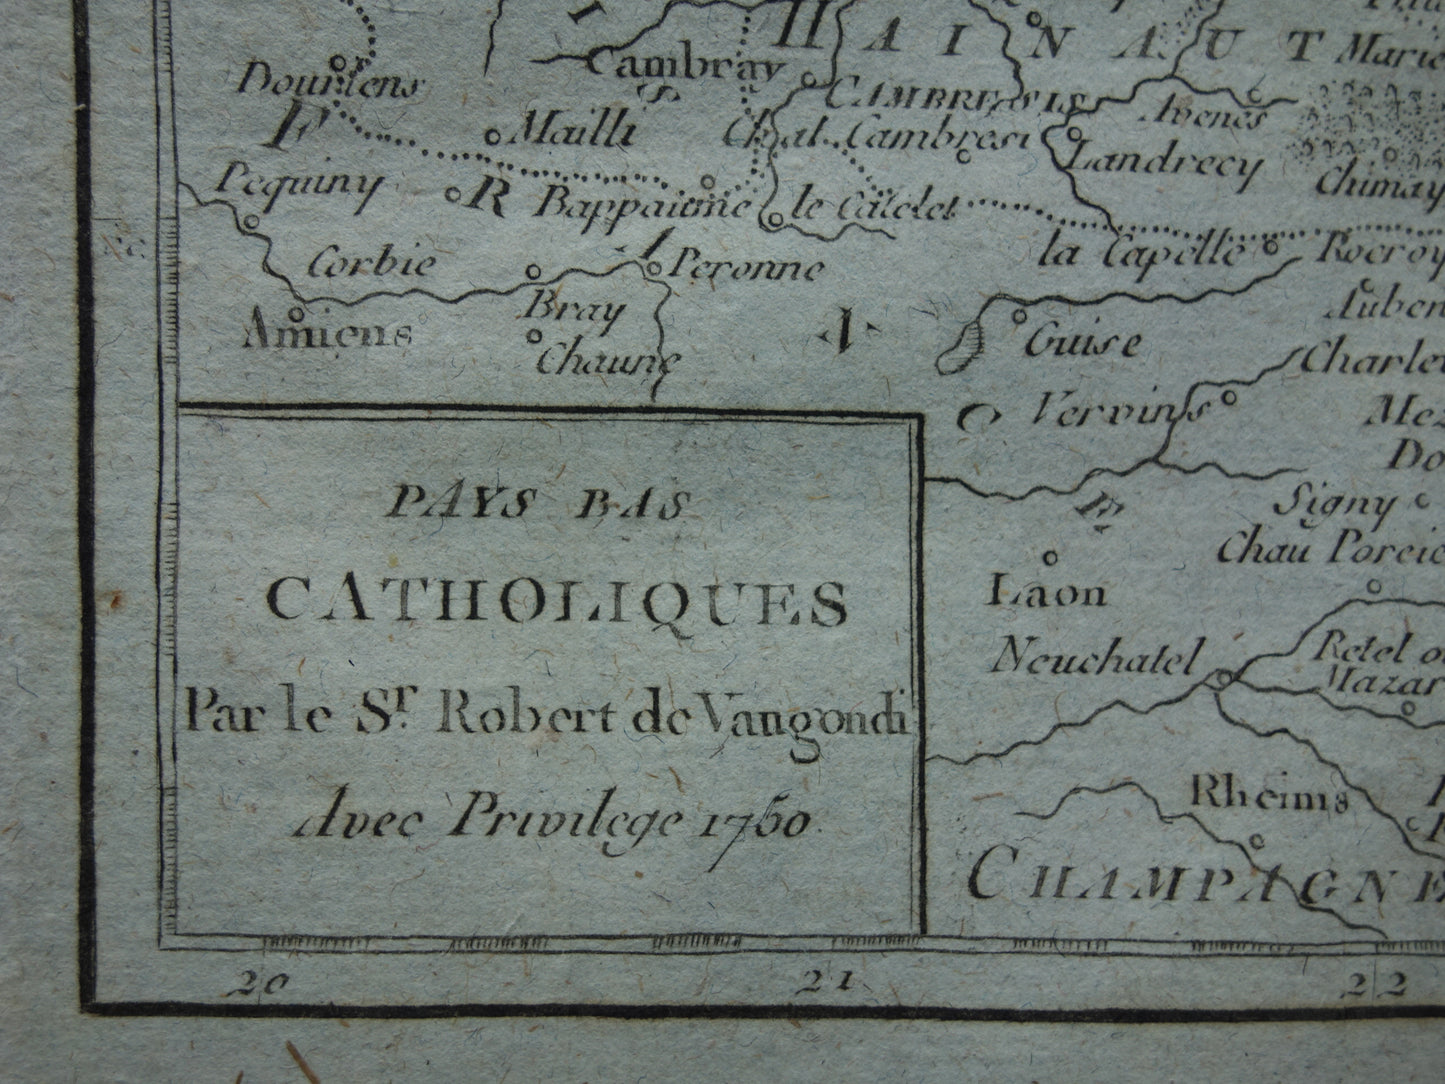 Pays Bas Catholiques Robert de Vaugondy 1750